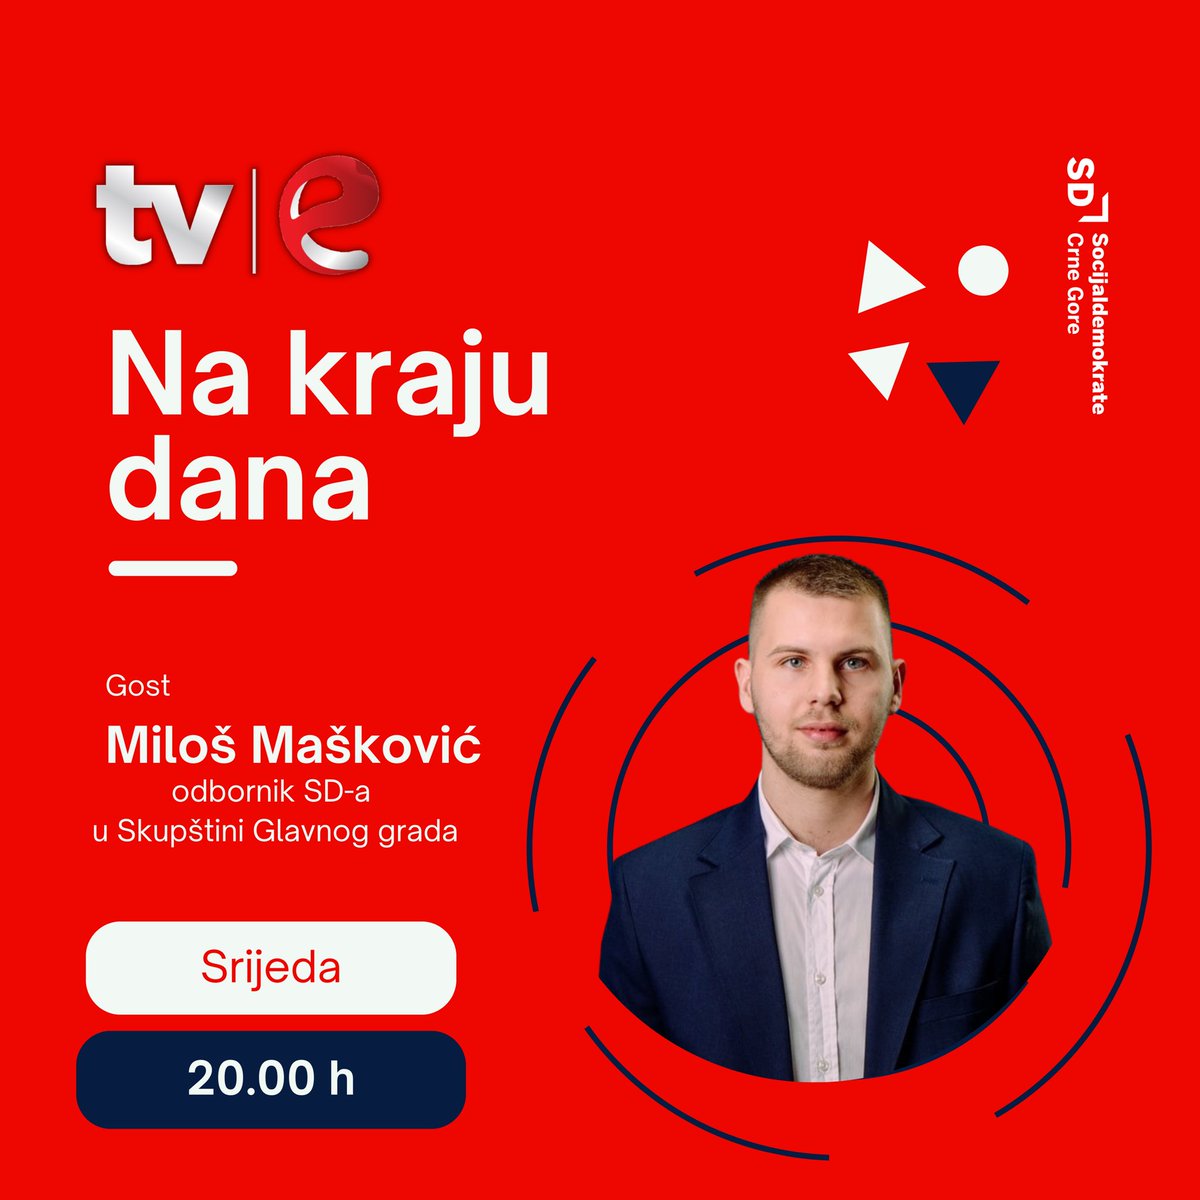 🔴Odbornik SD-a i predsjednik odborničkog kluba u Skupštini Glavnog grada @milosmaskovic, večeras će biti gost u emisiji „Na kraju dana” na @tve_montenegro. ⏰Srijeda, 29. maj u 20 sati.